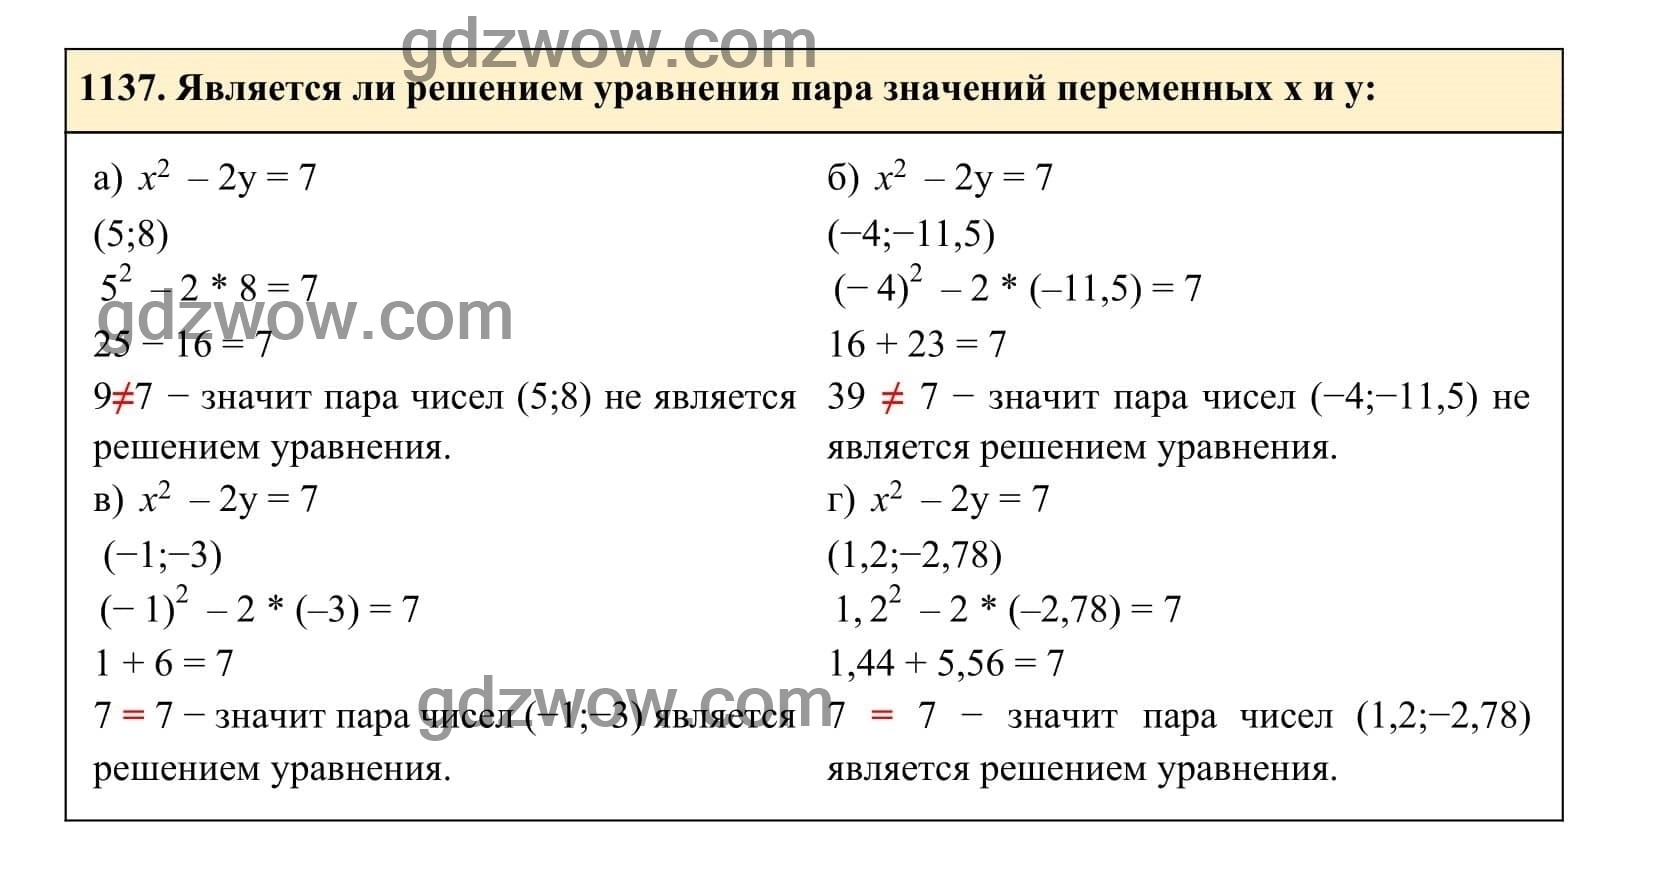 Упражнение 1137 - ГДЗ по Алгебре 7 класс Учебник Макарычев (решебник) - GDZwow